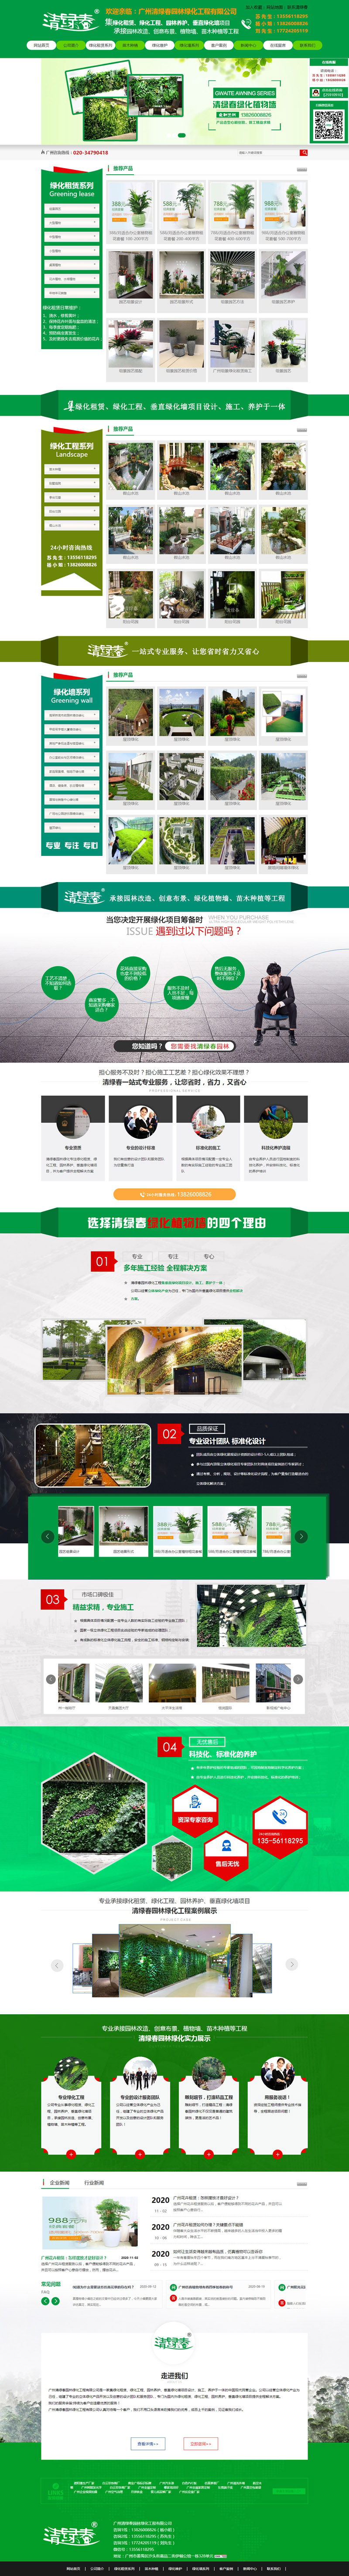 清绿春园林绿化工程官方网站建设首页效果图展示